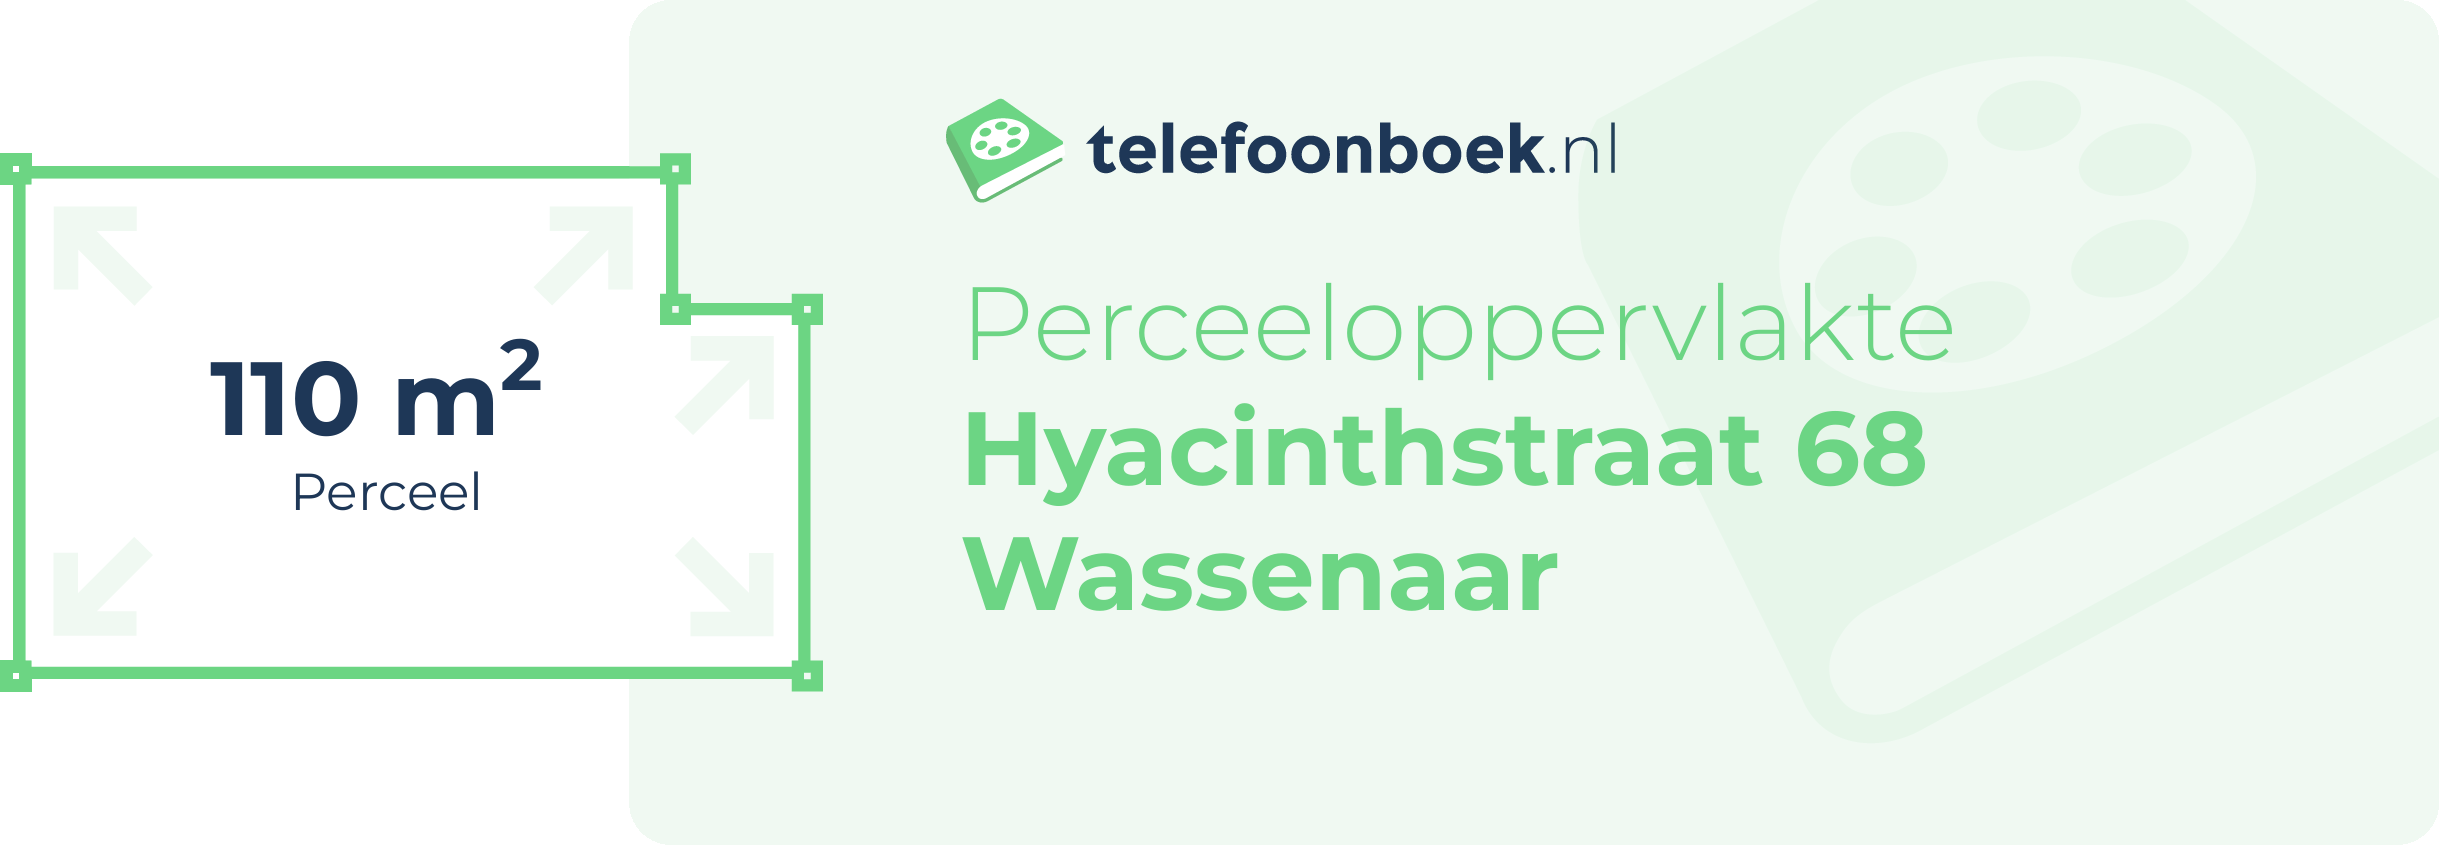 Perceeloppervlakte Hyacinthstraat 68 Wassenaar